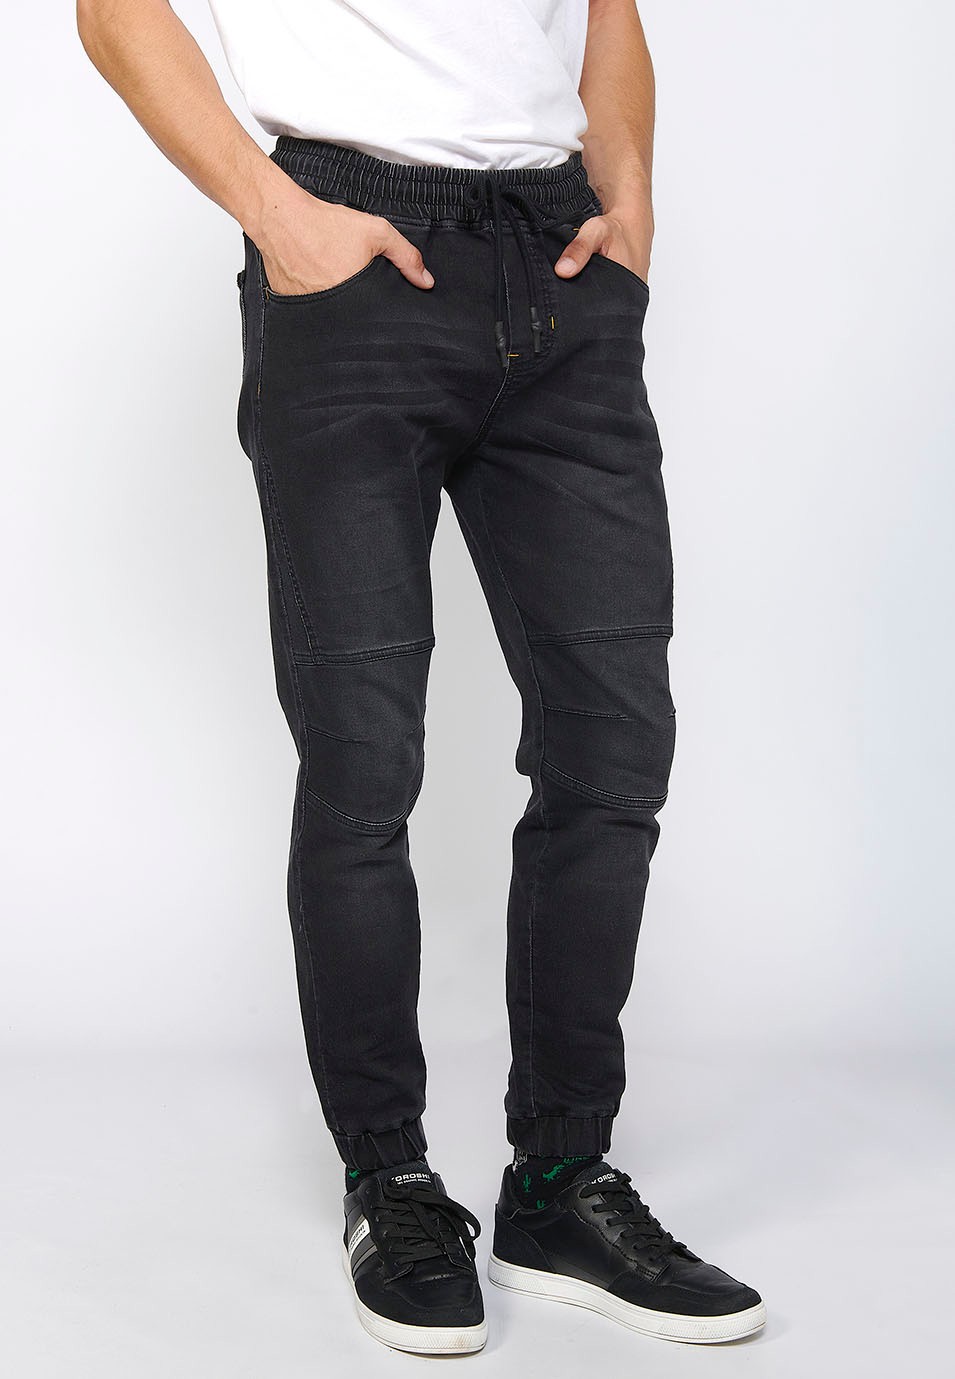 Pantalon de jogging long slim ajusté aux chevilles avec taille élastique réglable et cordon de serrage en Noir pour Homme 3